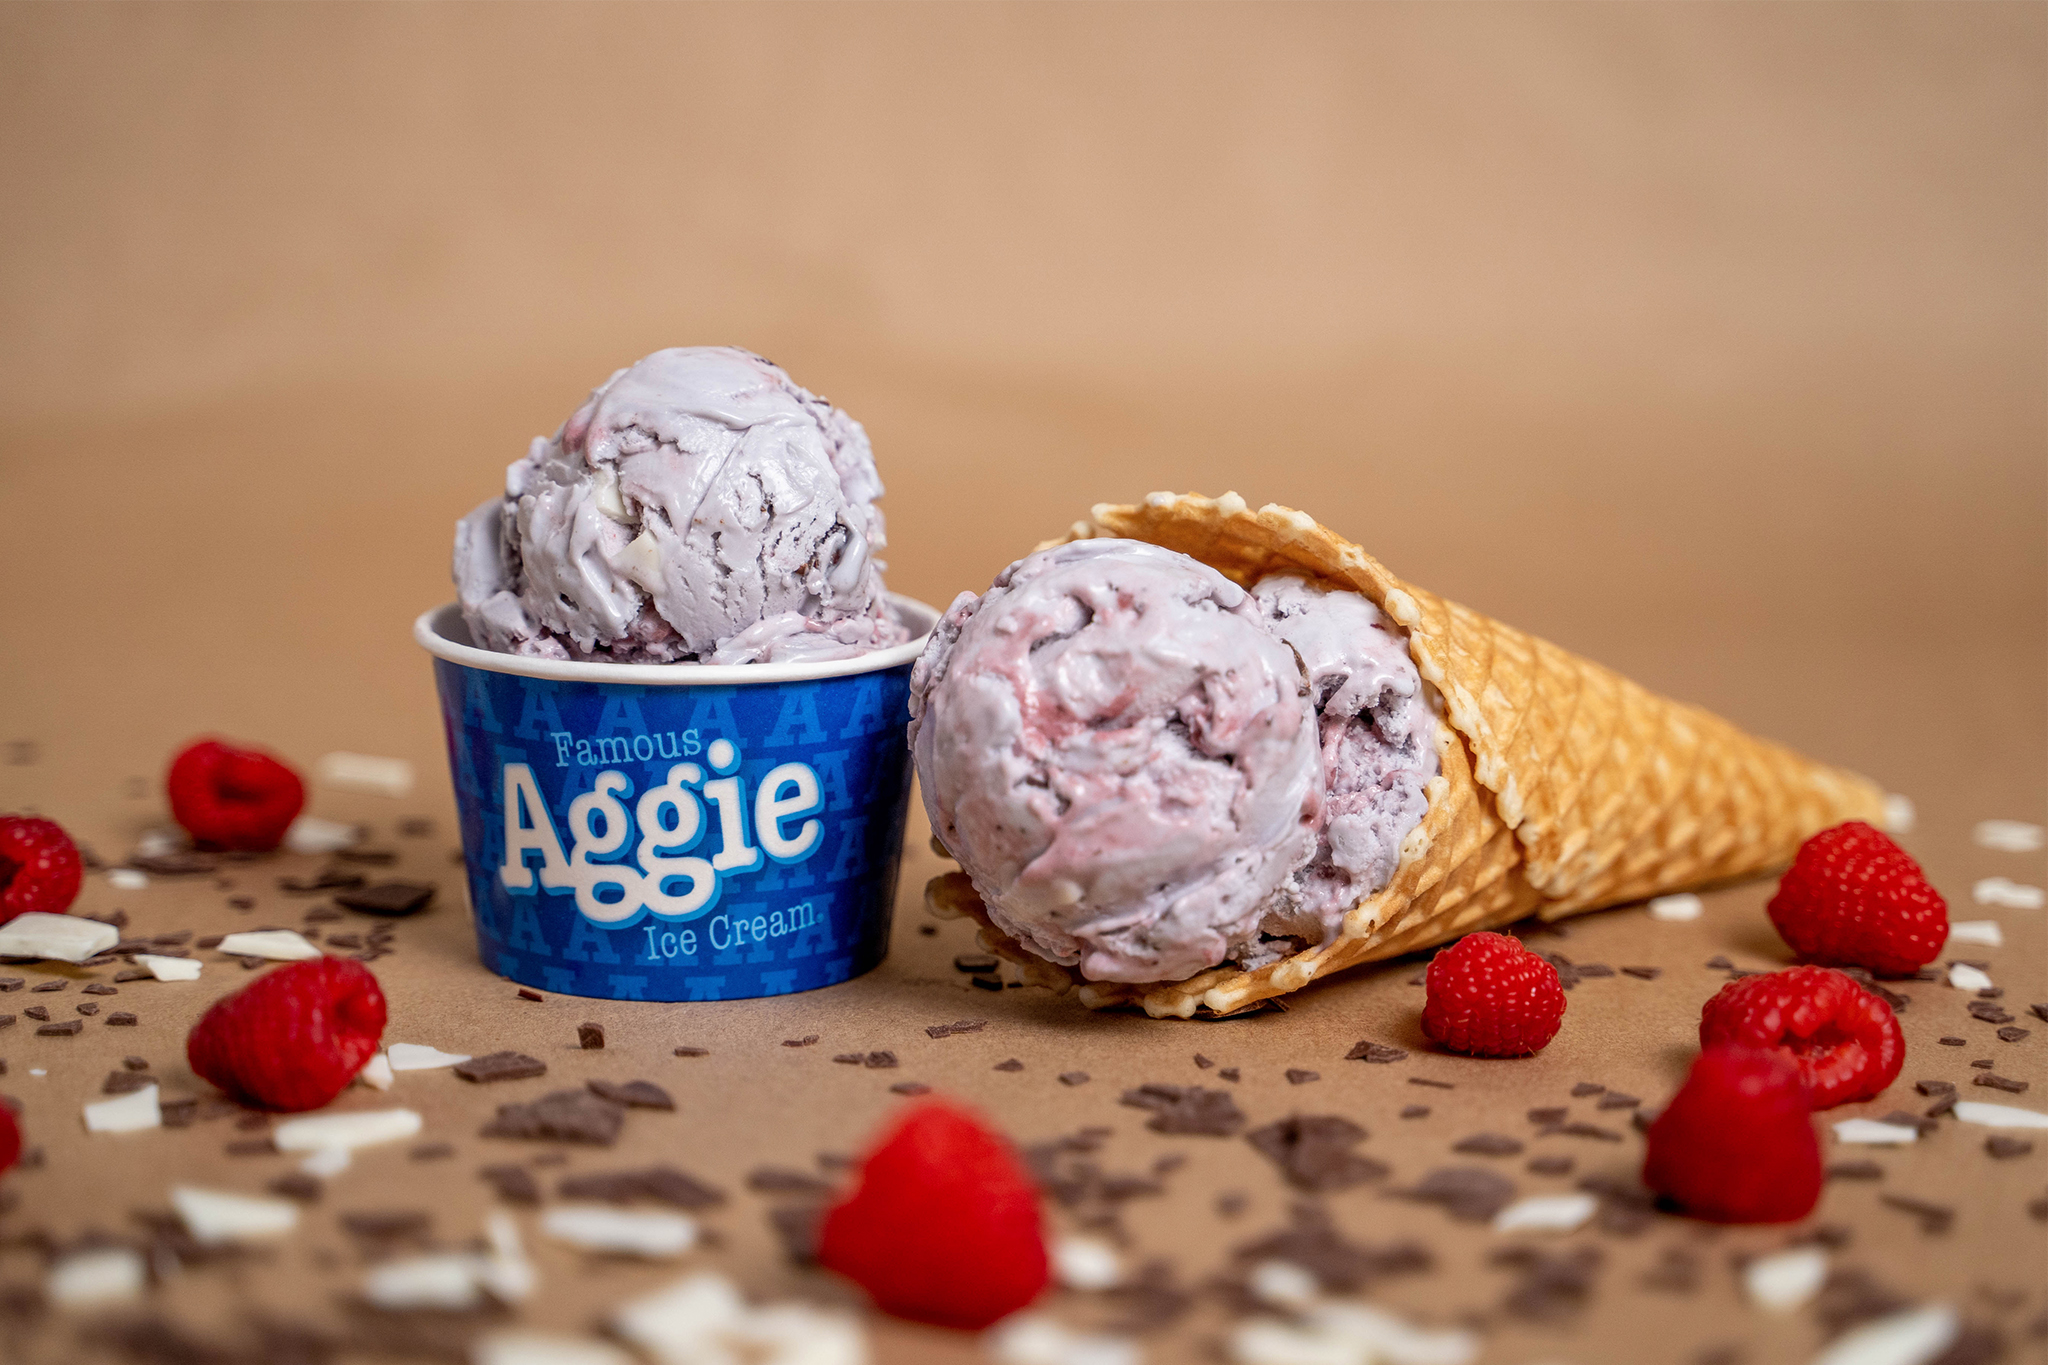 Aggie Space Debris Ice Cream